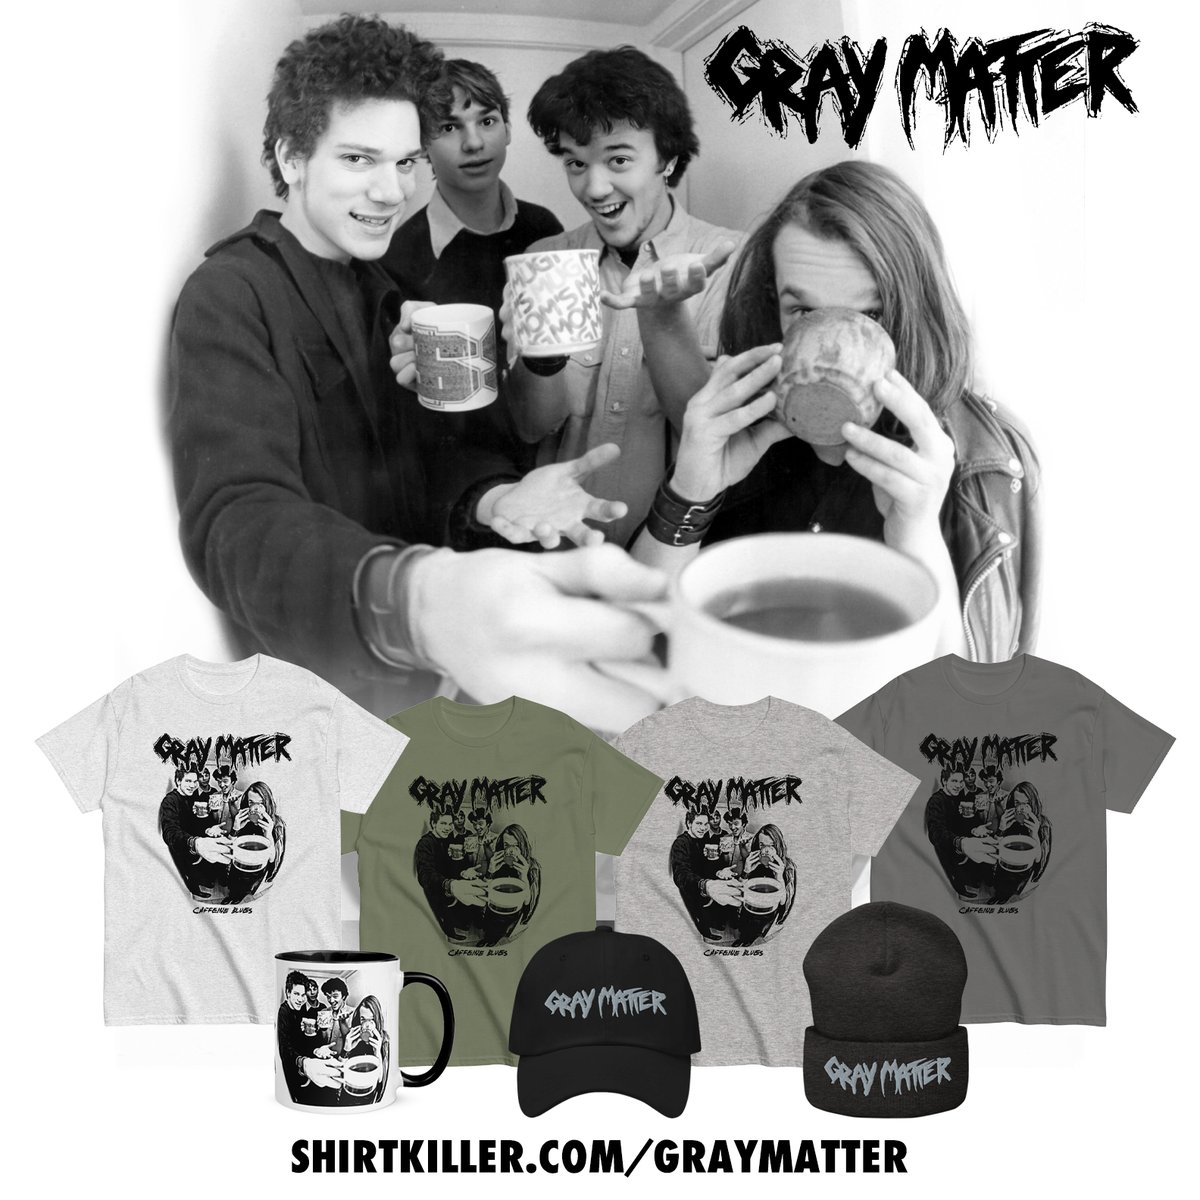 New Gray Matter merch. shirtkiller.com